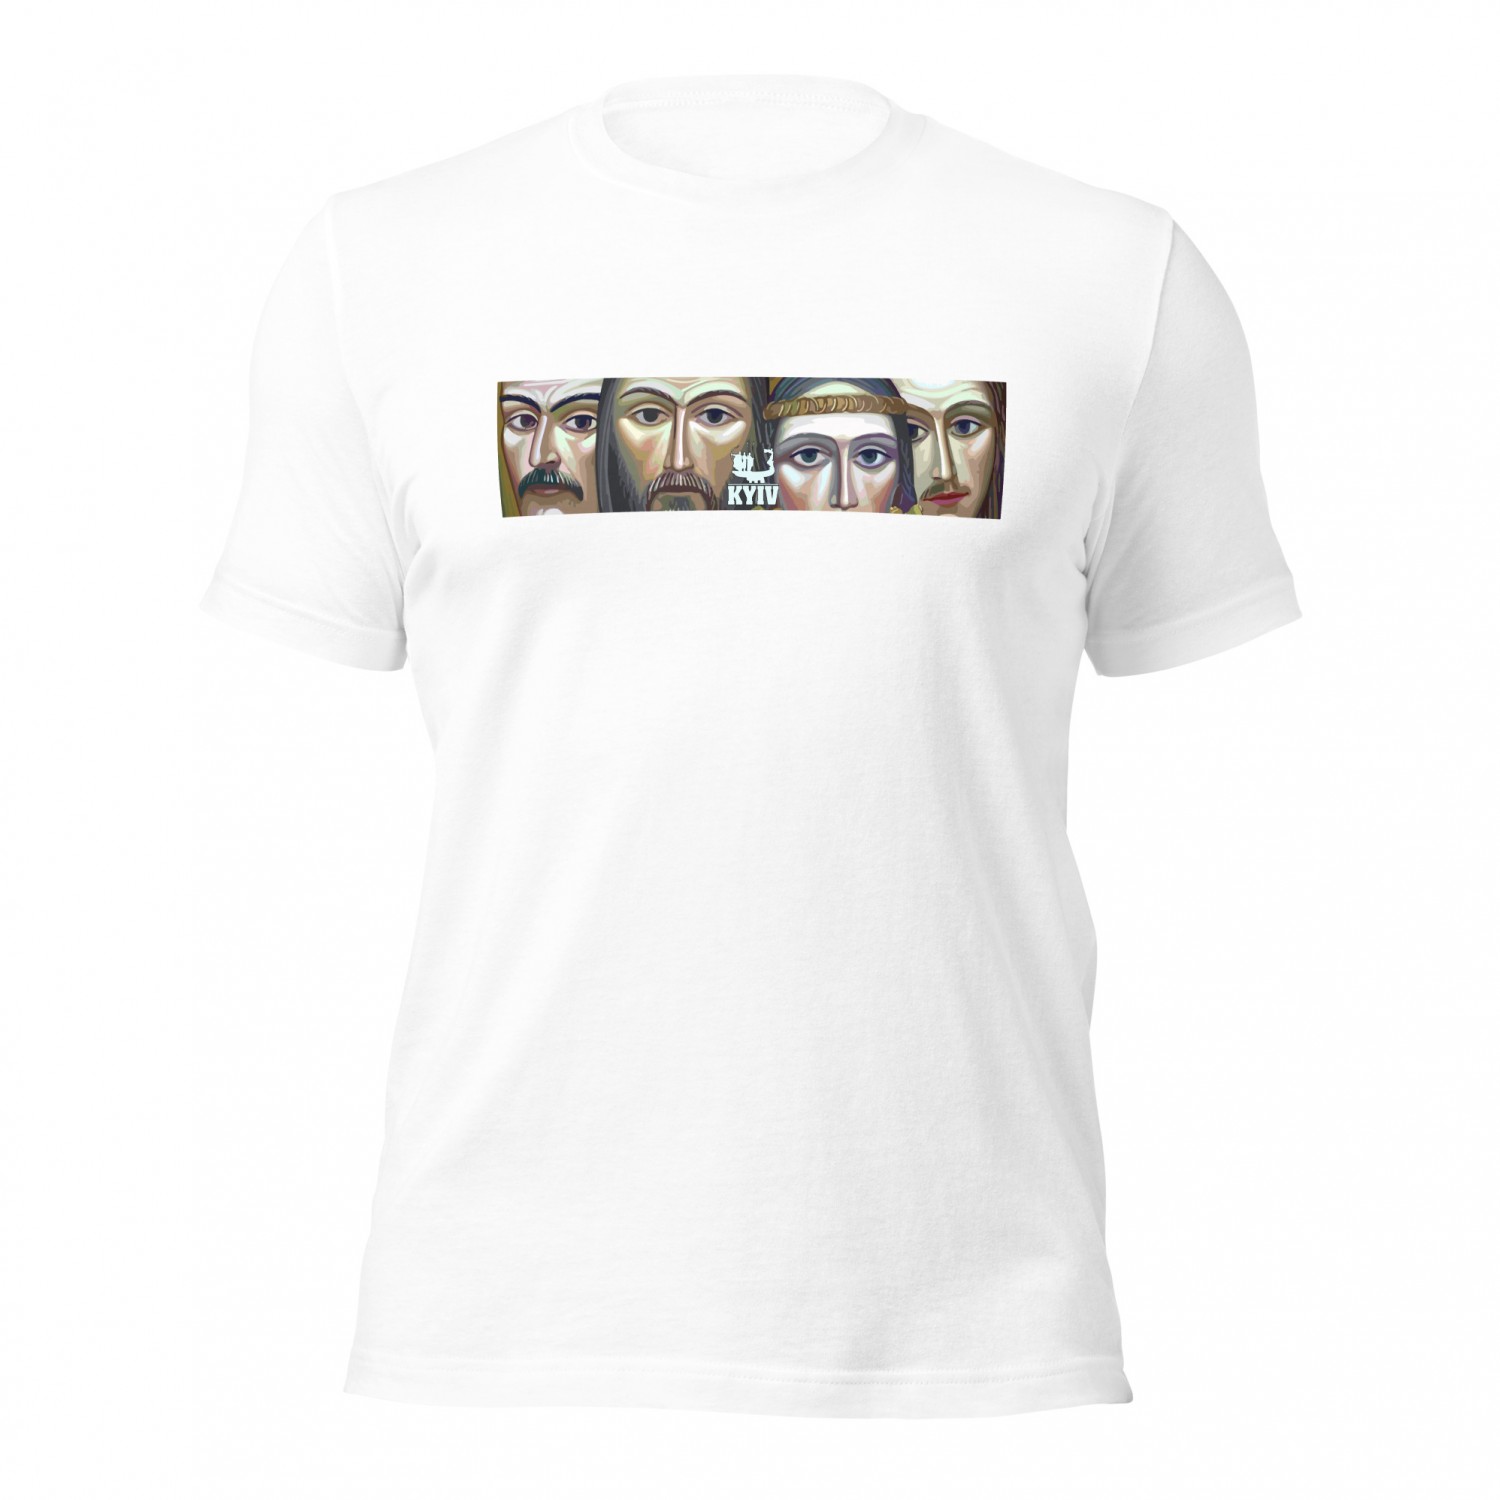 Kup koszulkę - Kijów